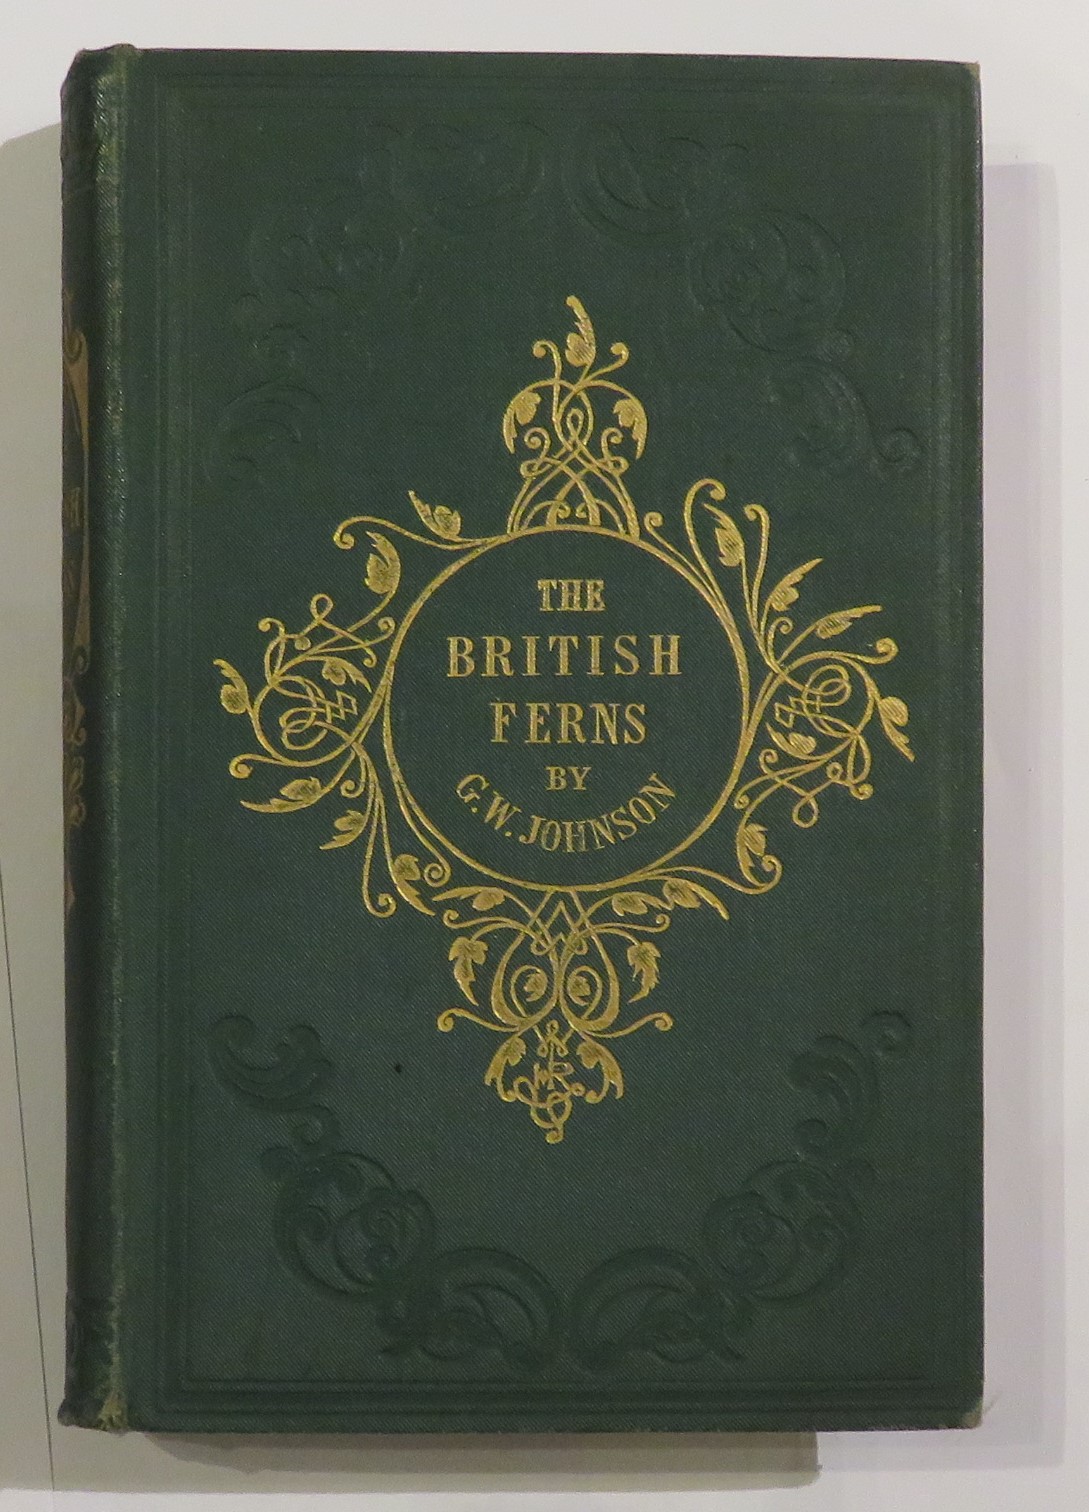 The British Ferns